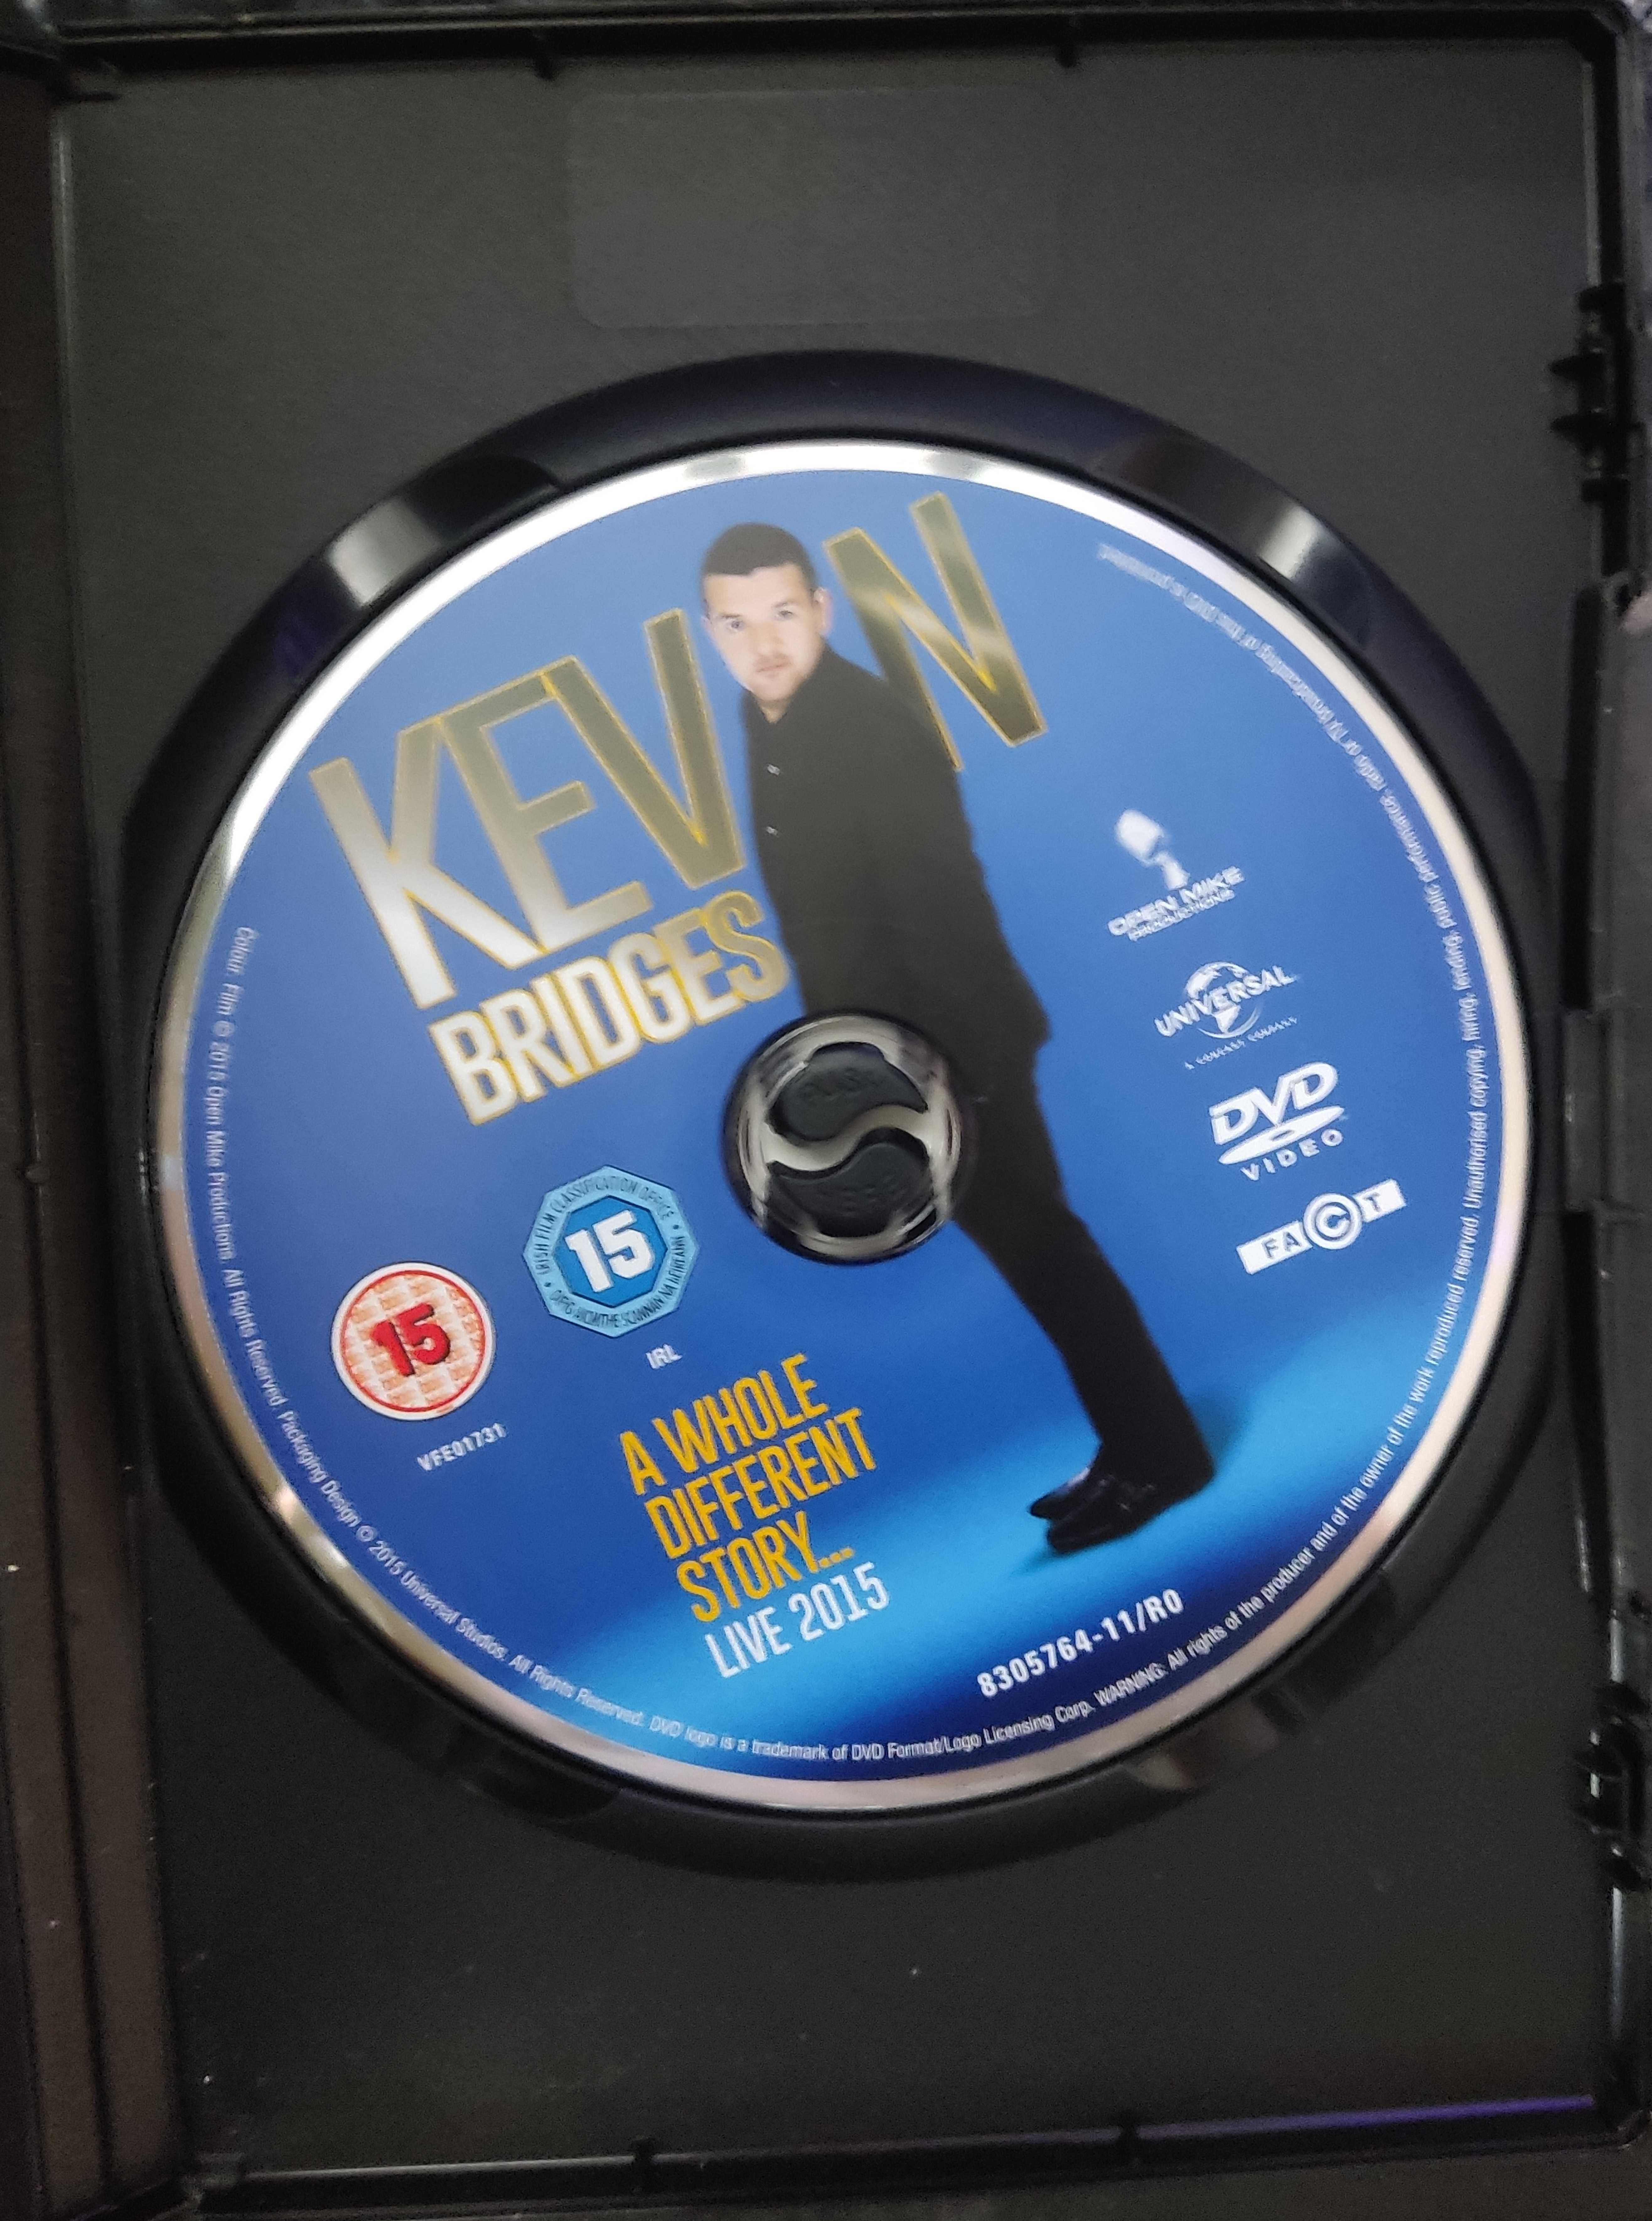 Kevin Bridges Live: A Whole Different Story DVD-Video EN